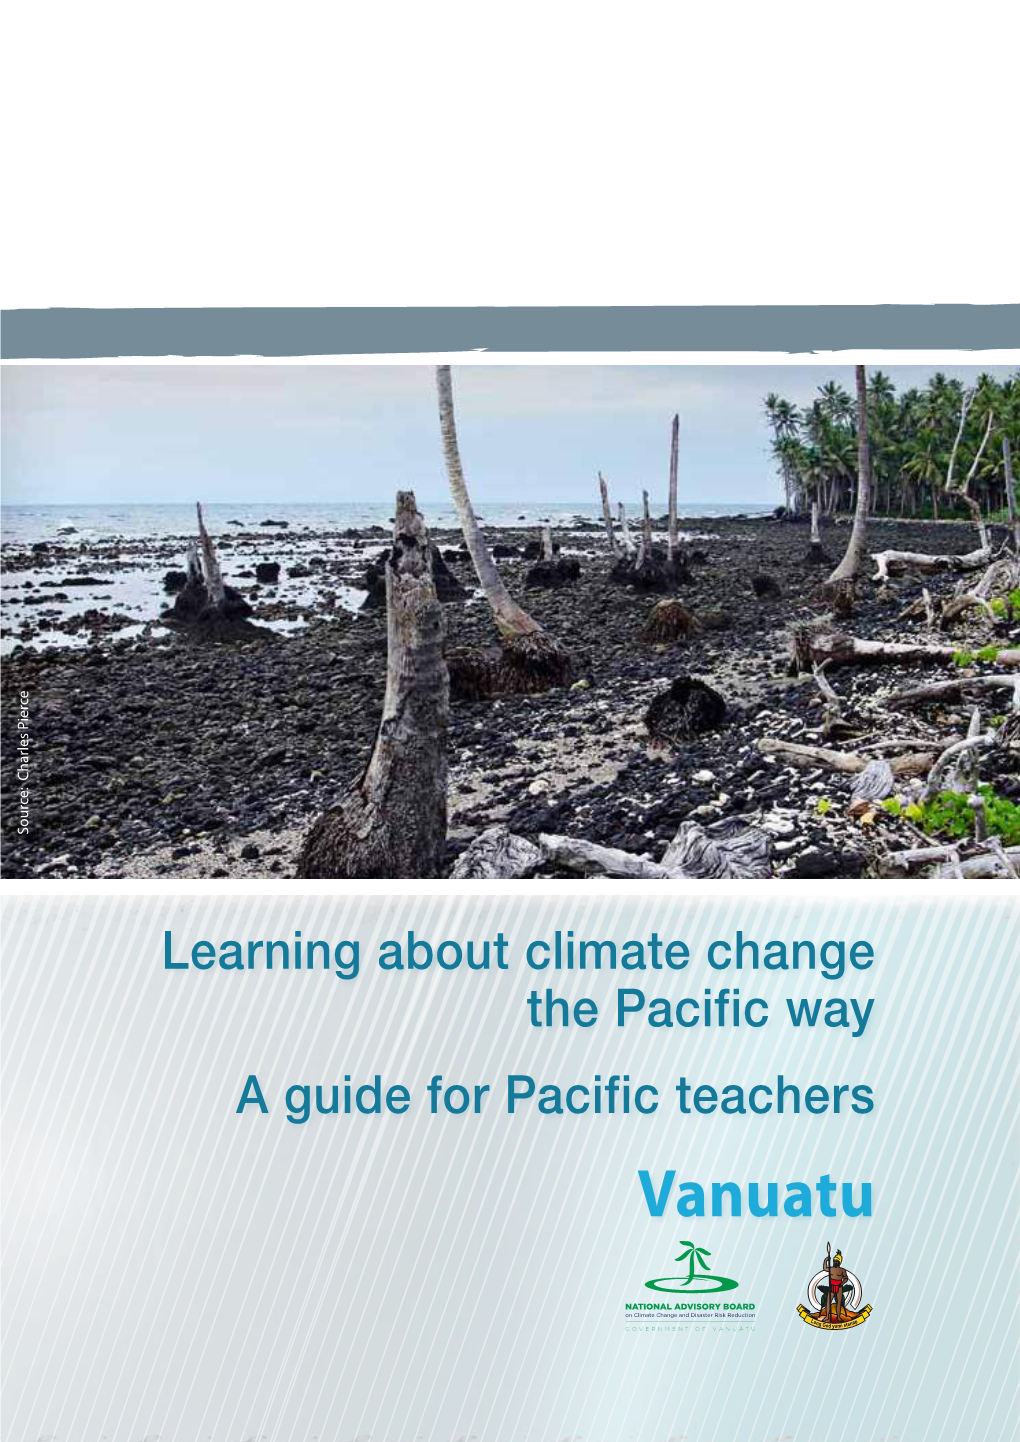 A Guide for Pacific Teachers –Vanuatu